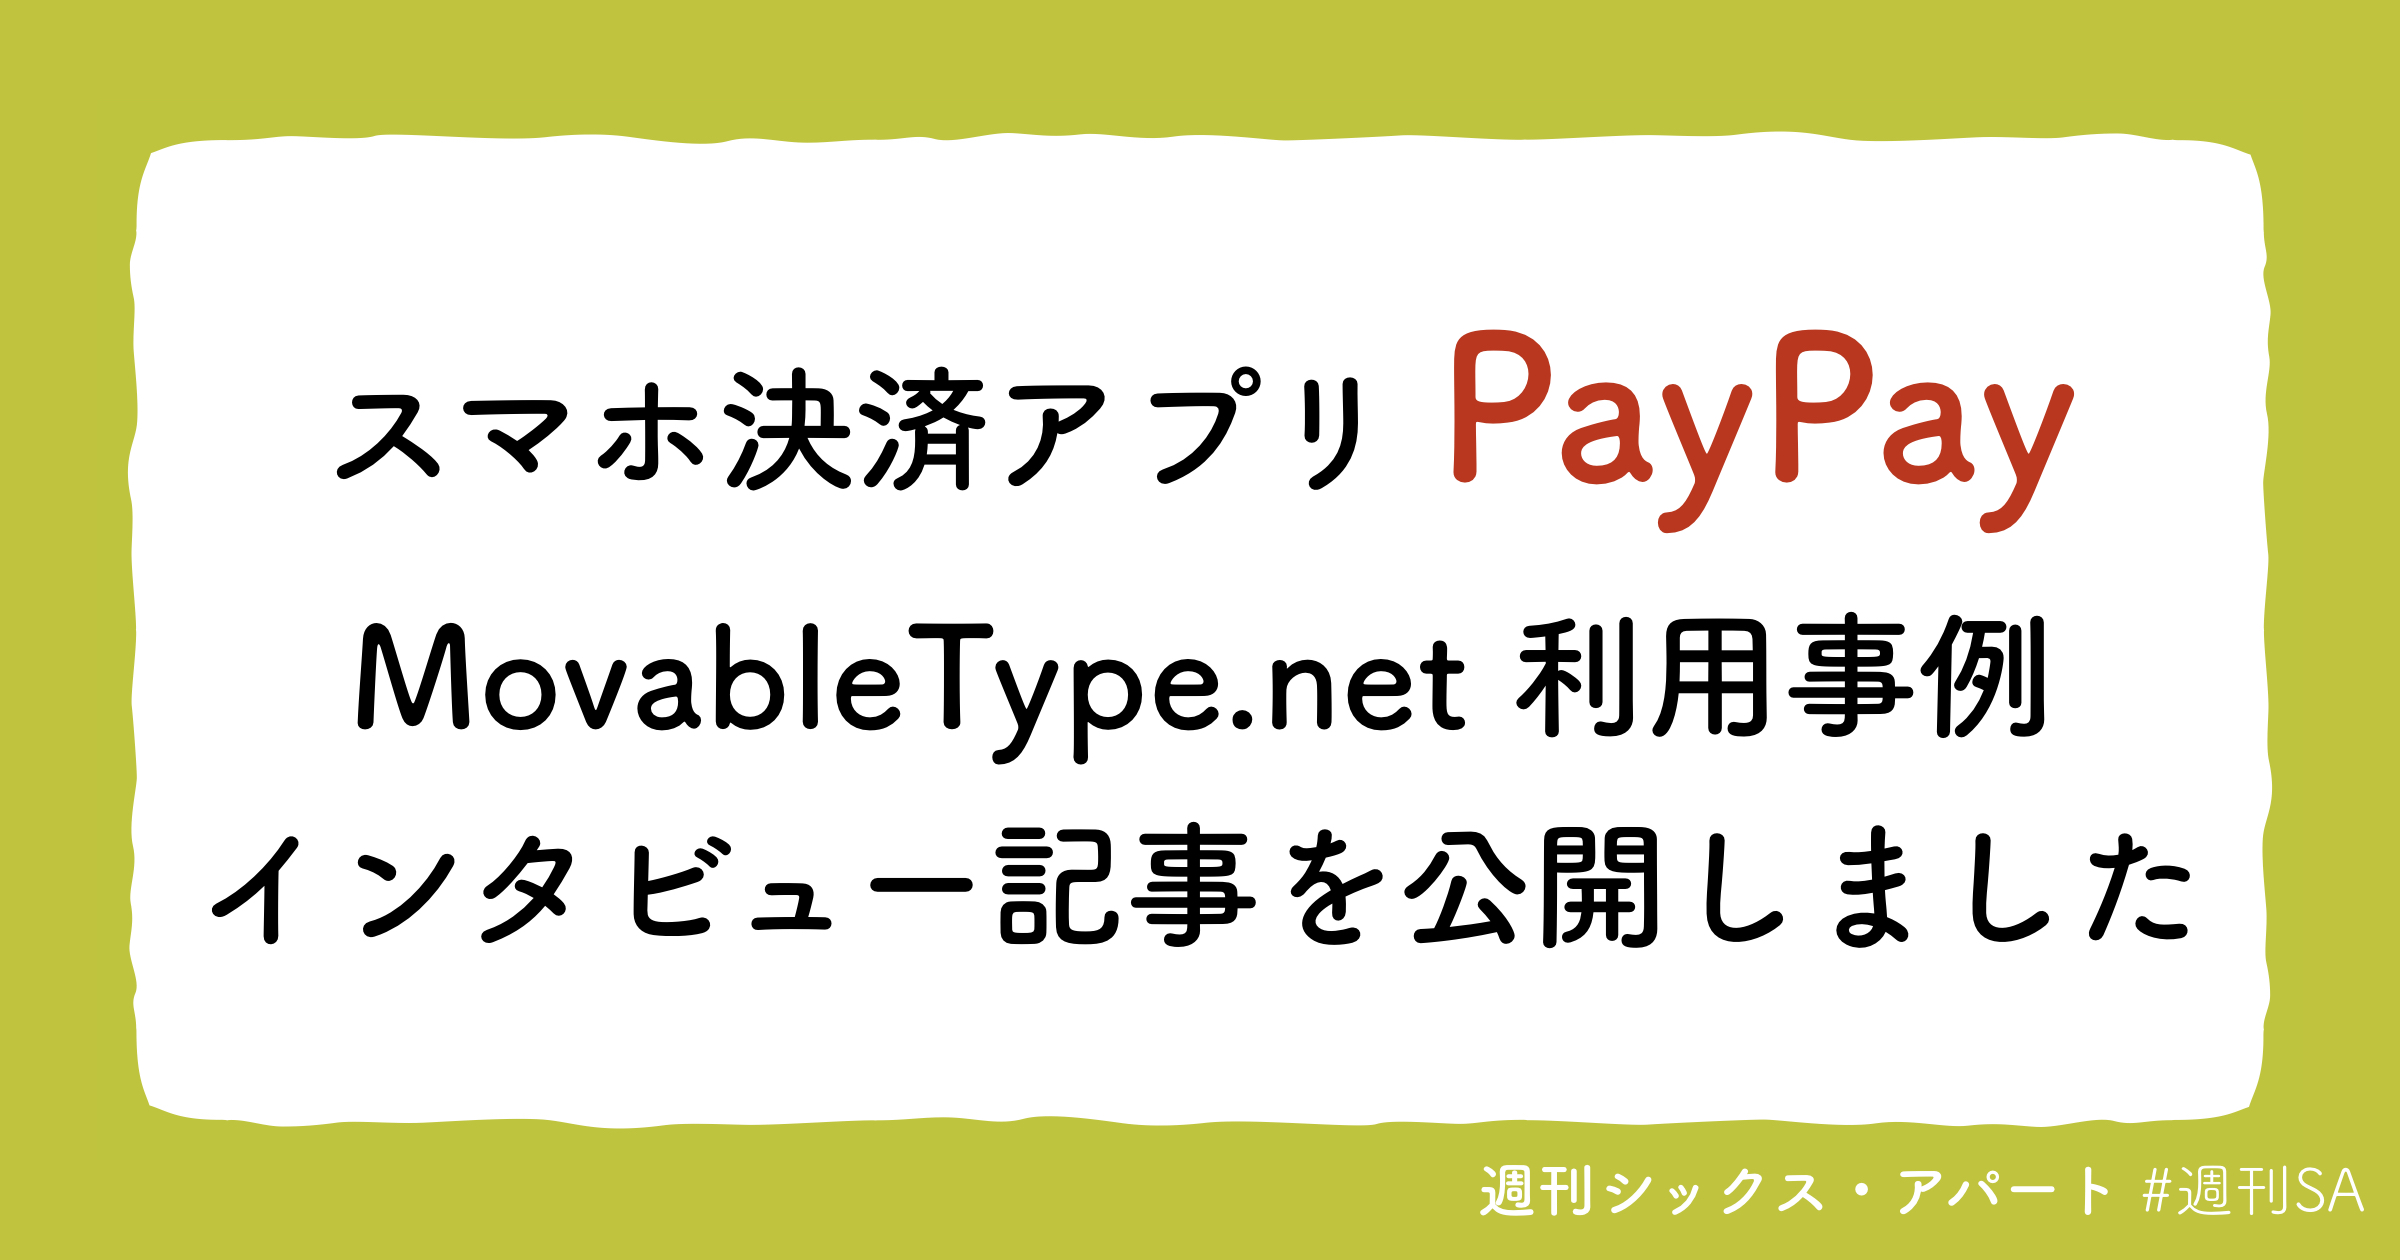 スマホ決済アプリ「PayPay」での MovableType.net 利用事例インタビュー記事を公開しました [週刊SA]